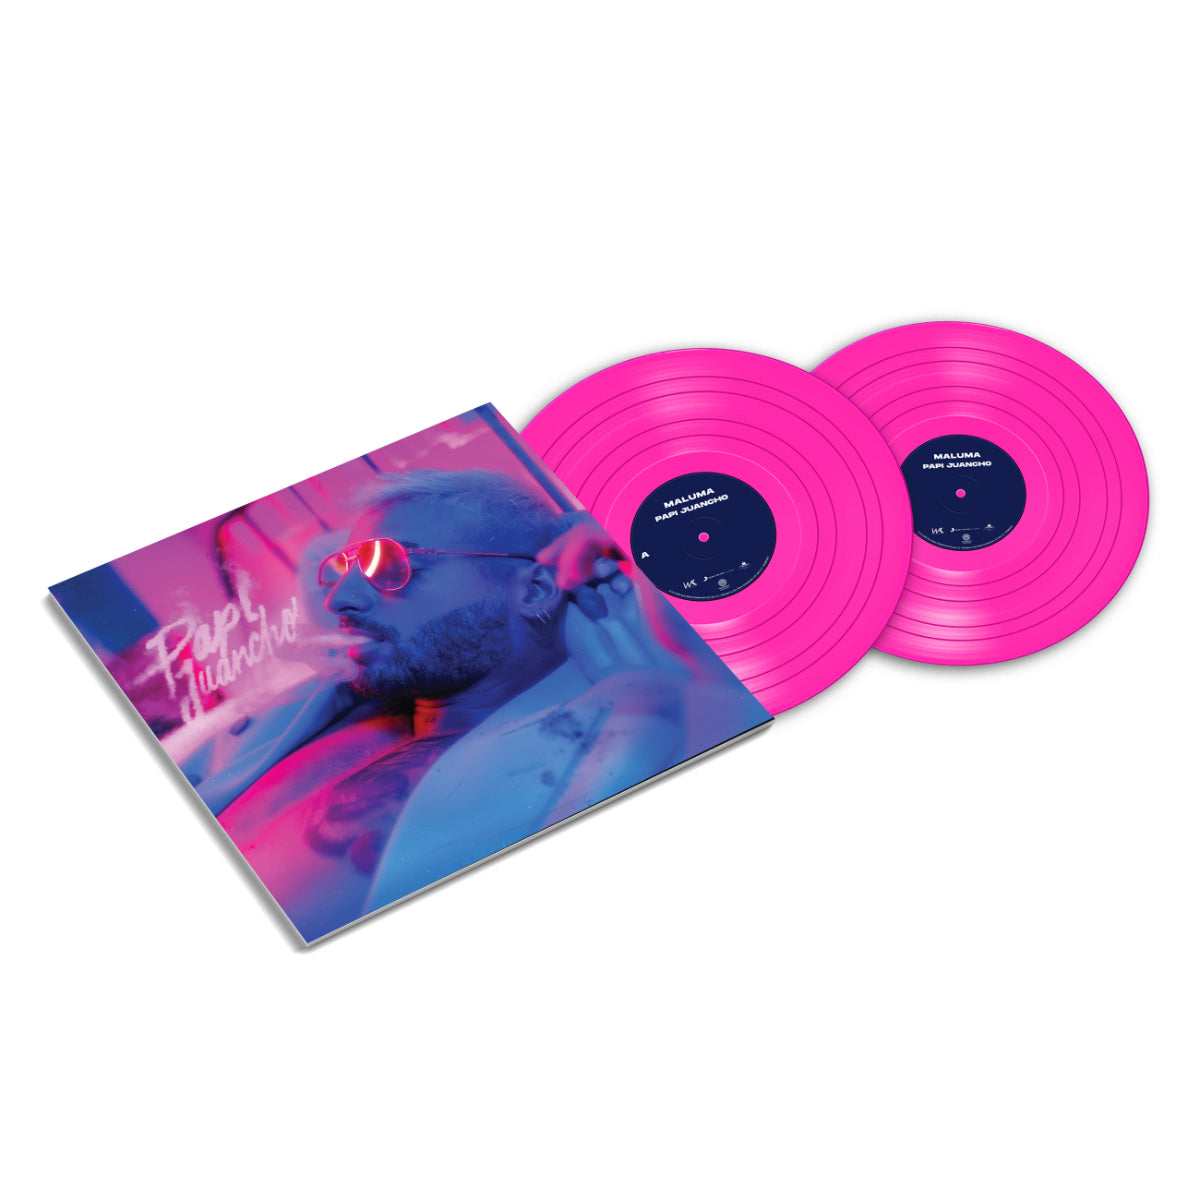 PAPI JUANCHO Pink Vinyl 2LP